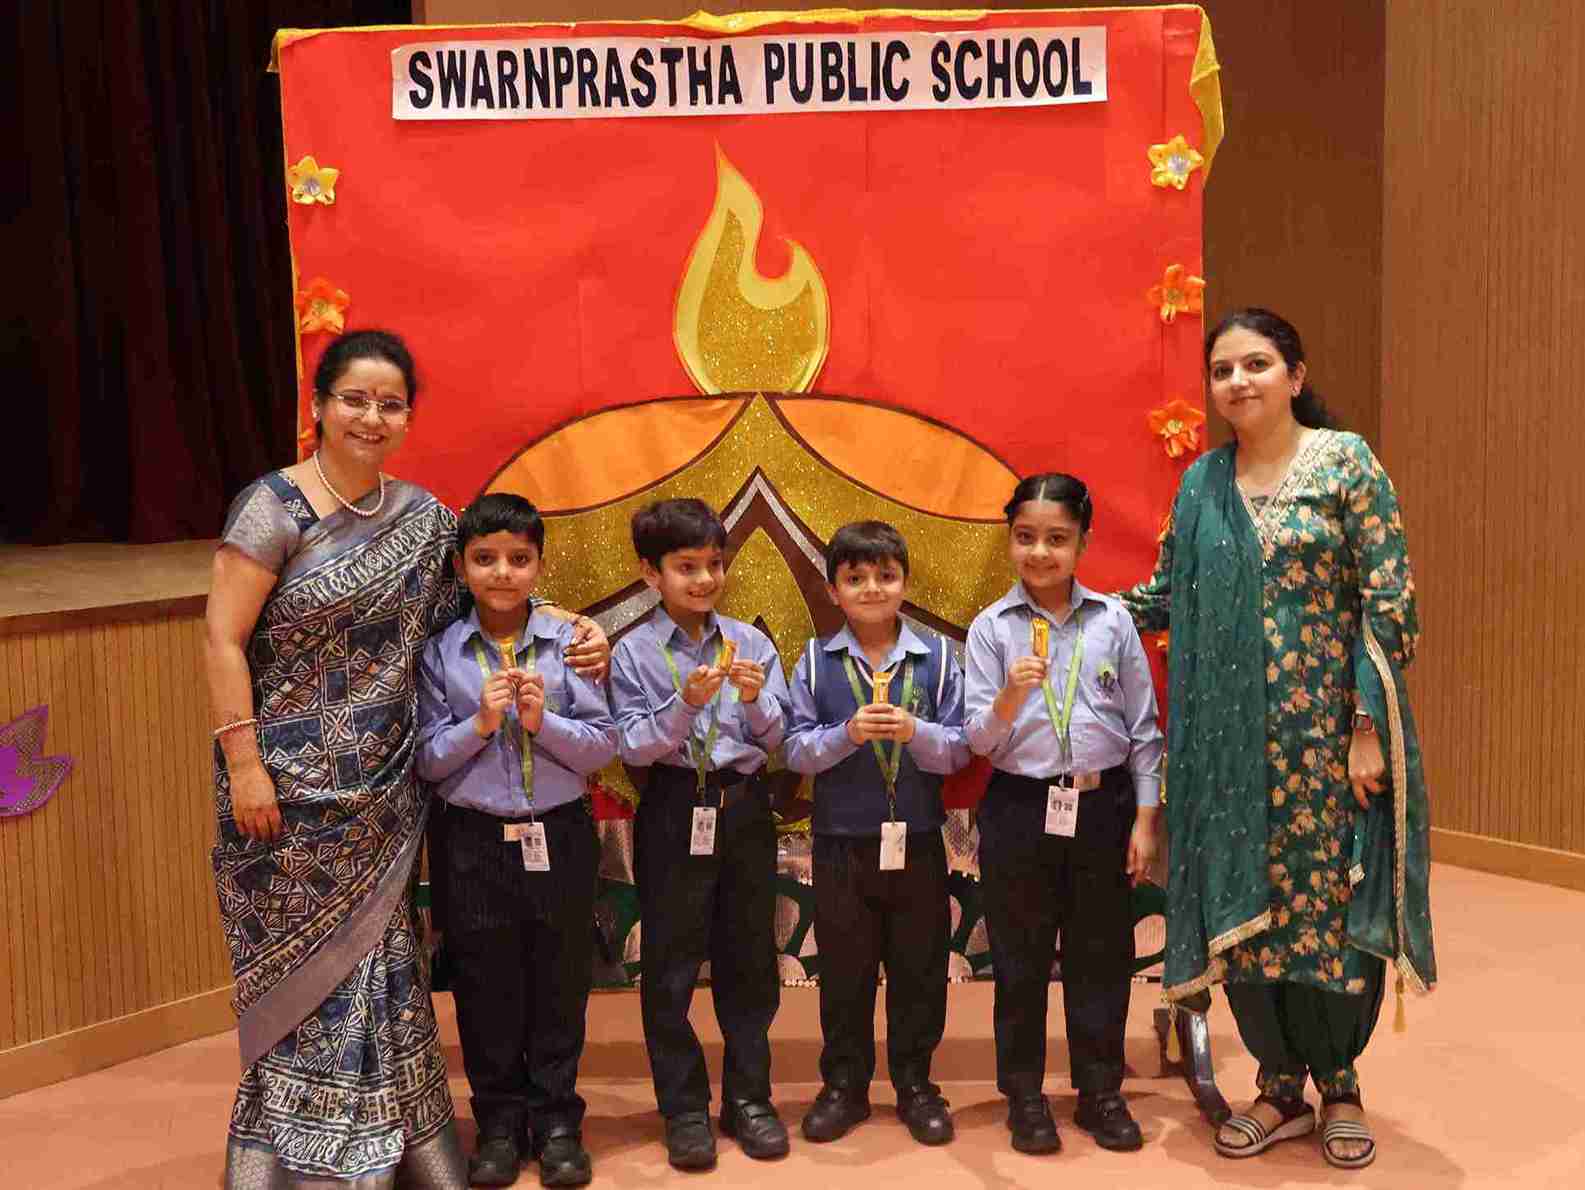 Swarnprastha Public School organized a Ramayana quiz